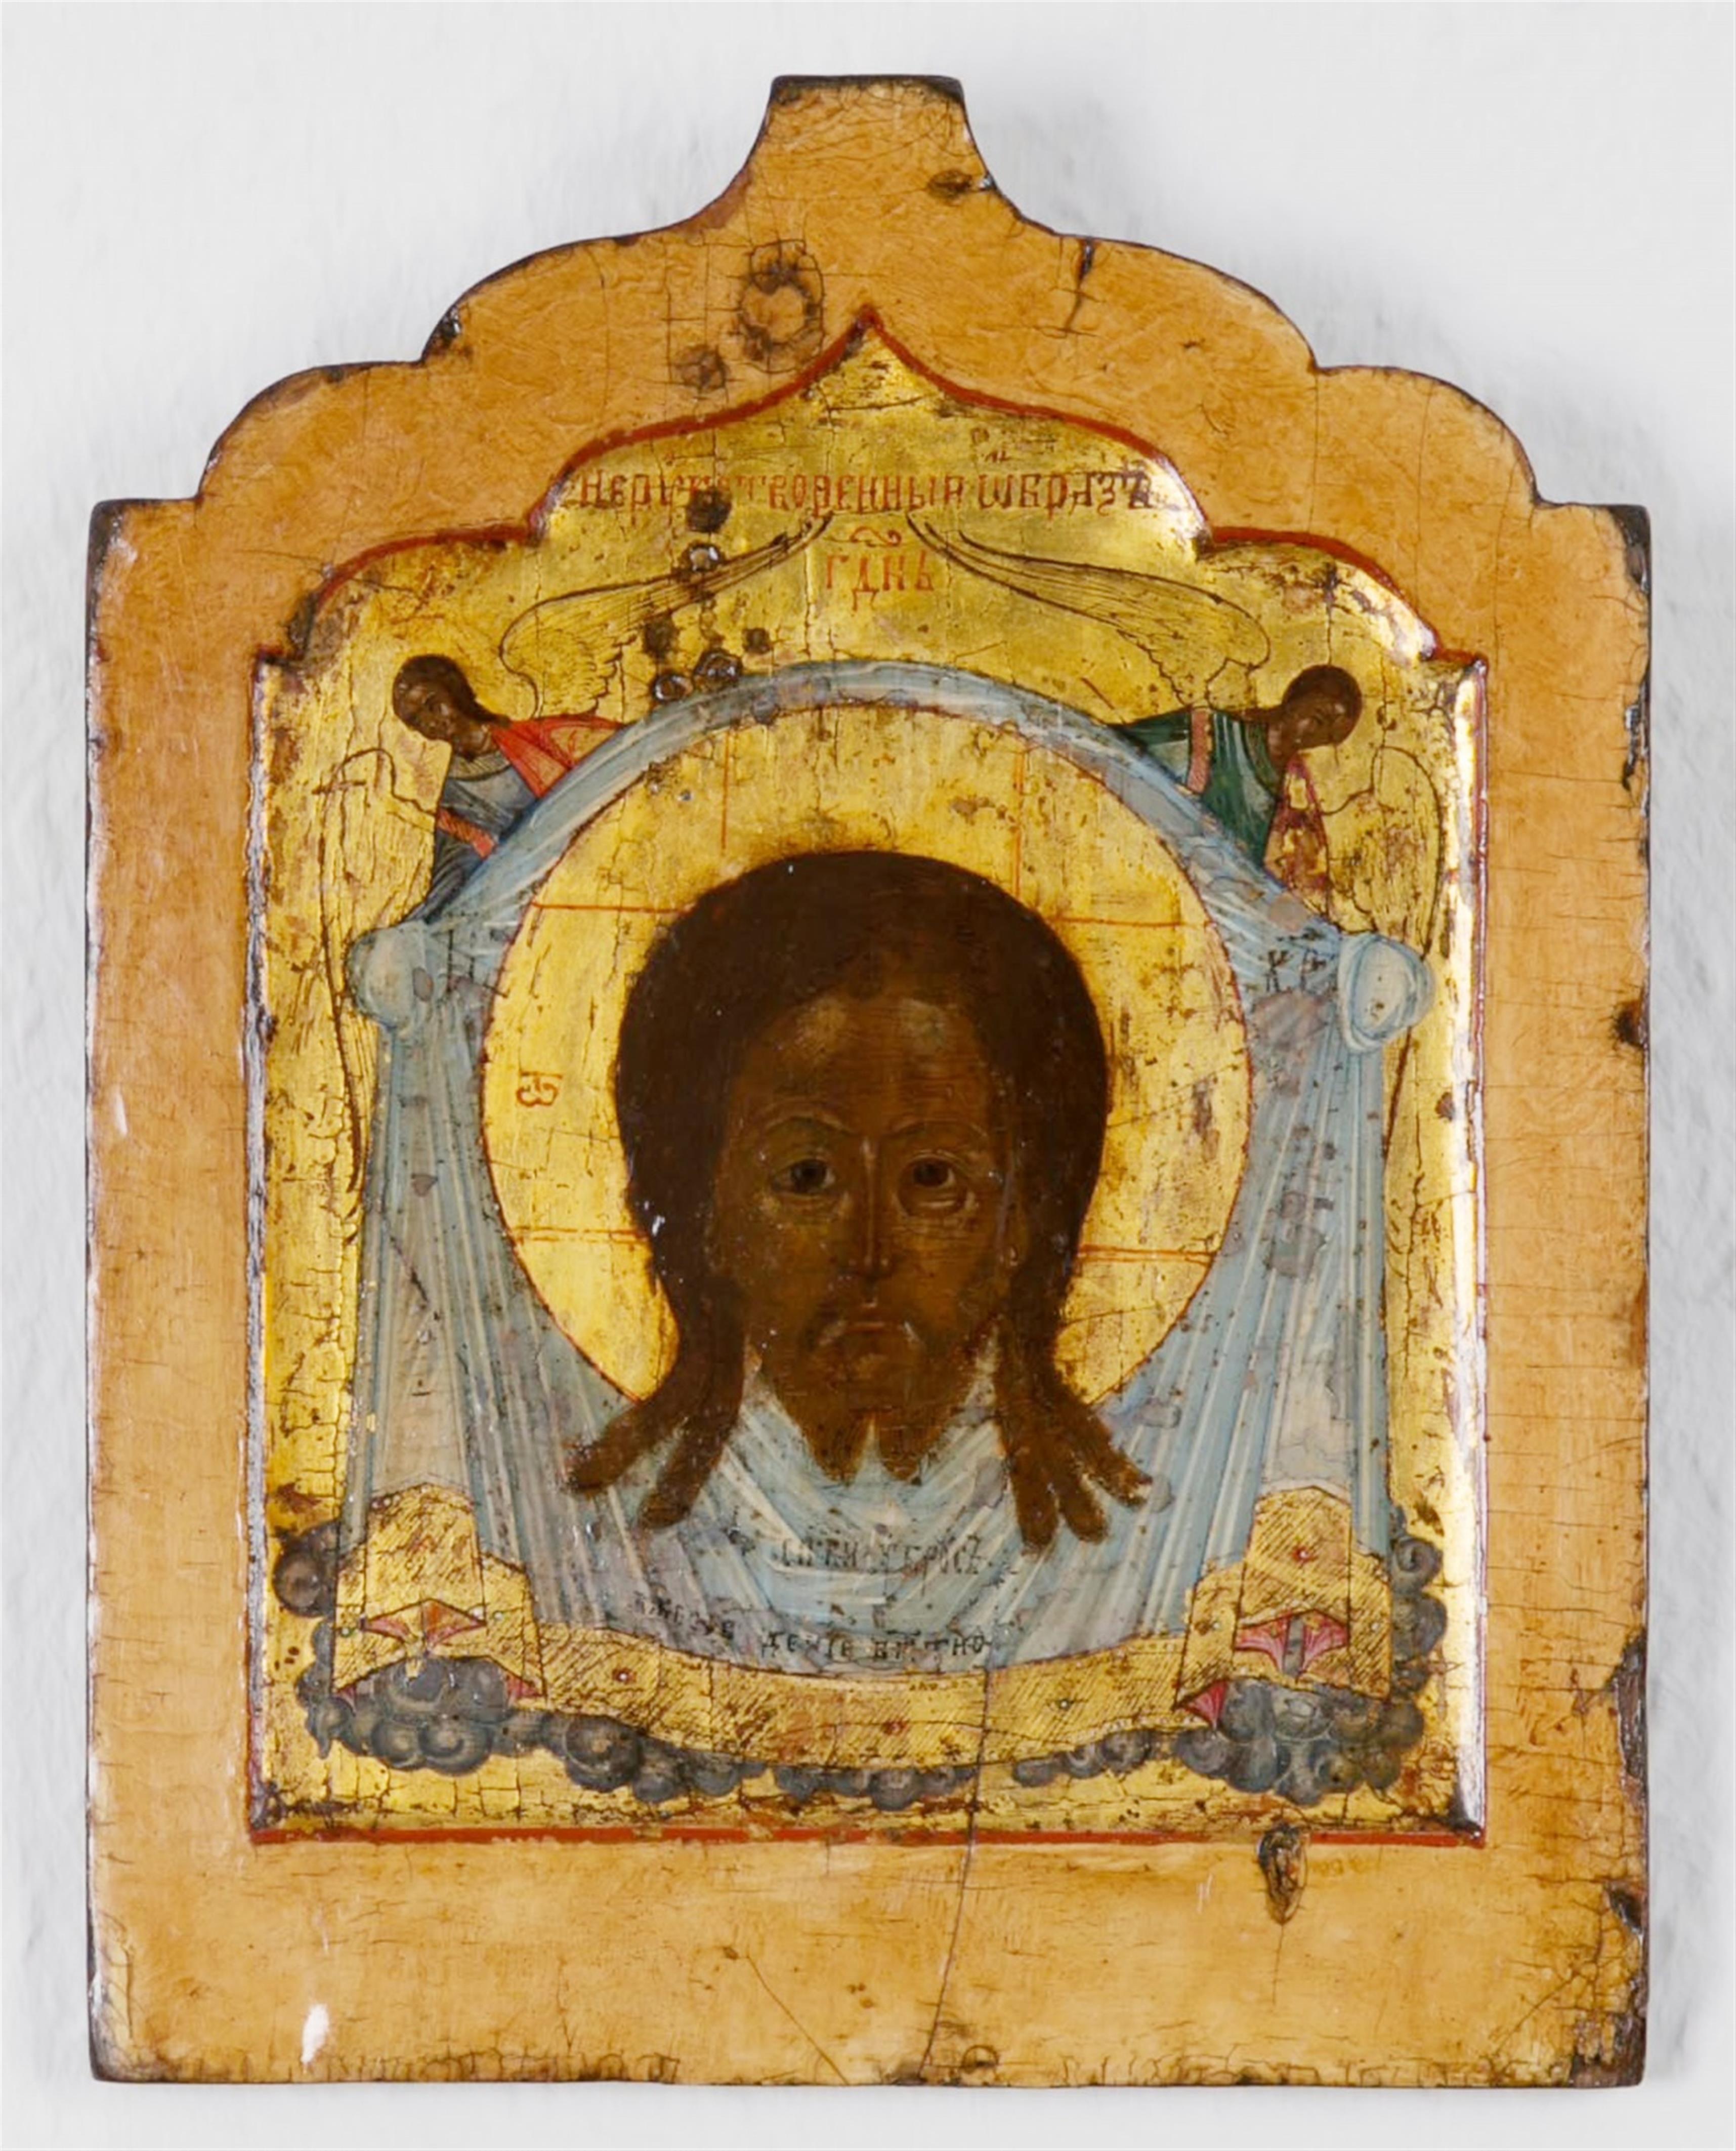 Russland, um 1800 - Ikone mit dem Mandylion, dem nicht von Menschenhand gemalte Antlitz Christi - image-1